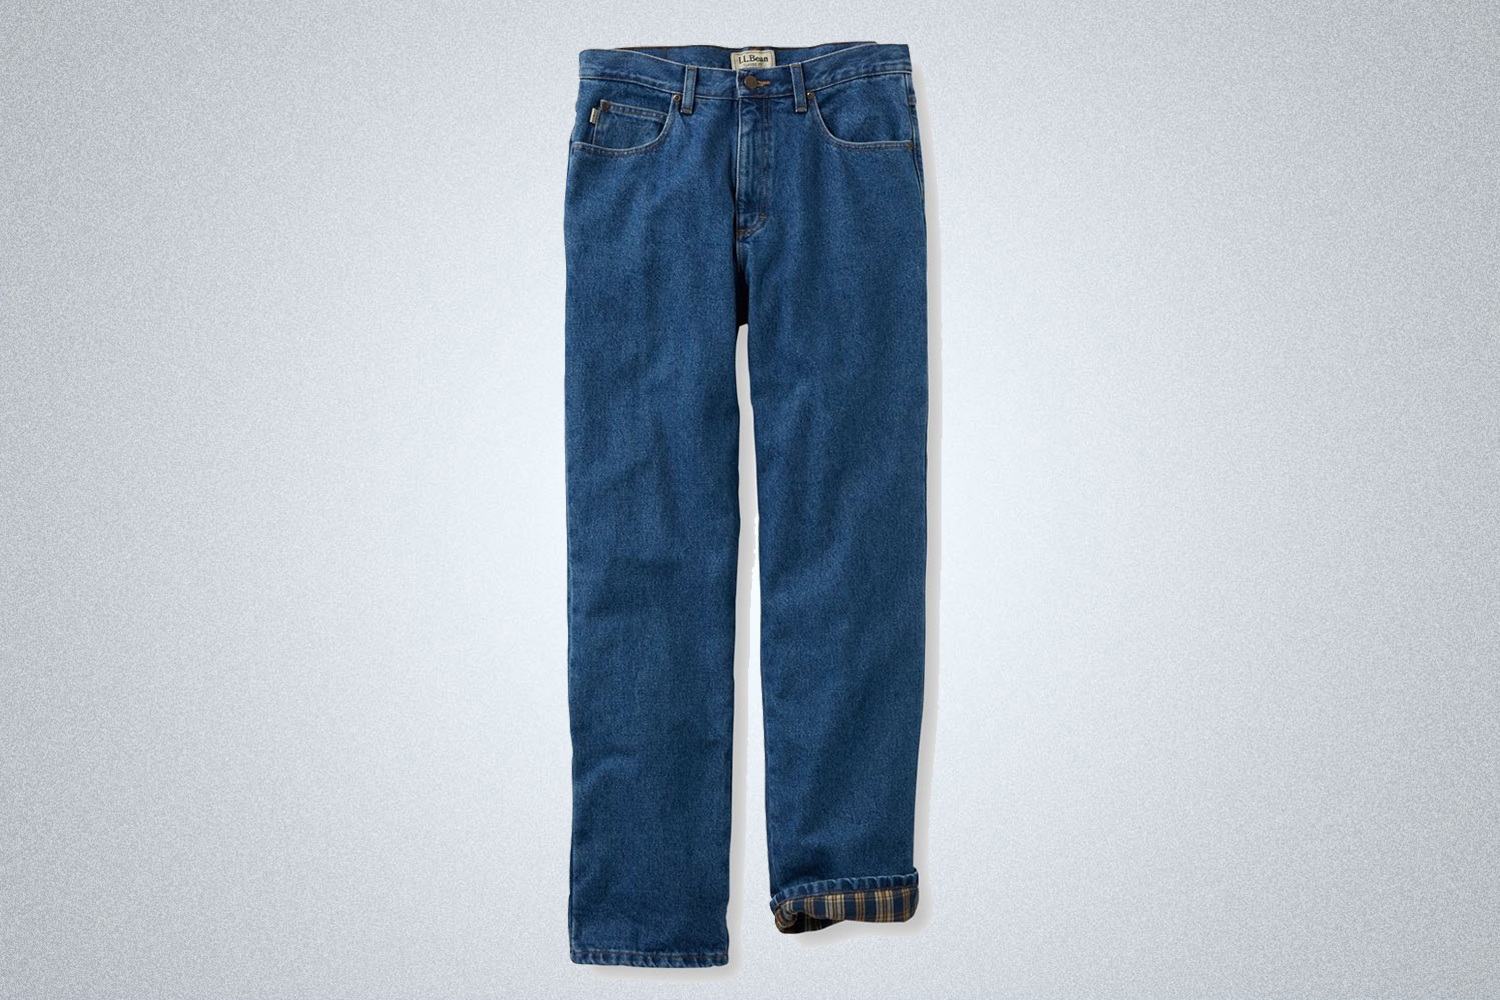 L.L. Bean Men's Double L Flannel-Lined Jeans, Classic Fit